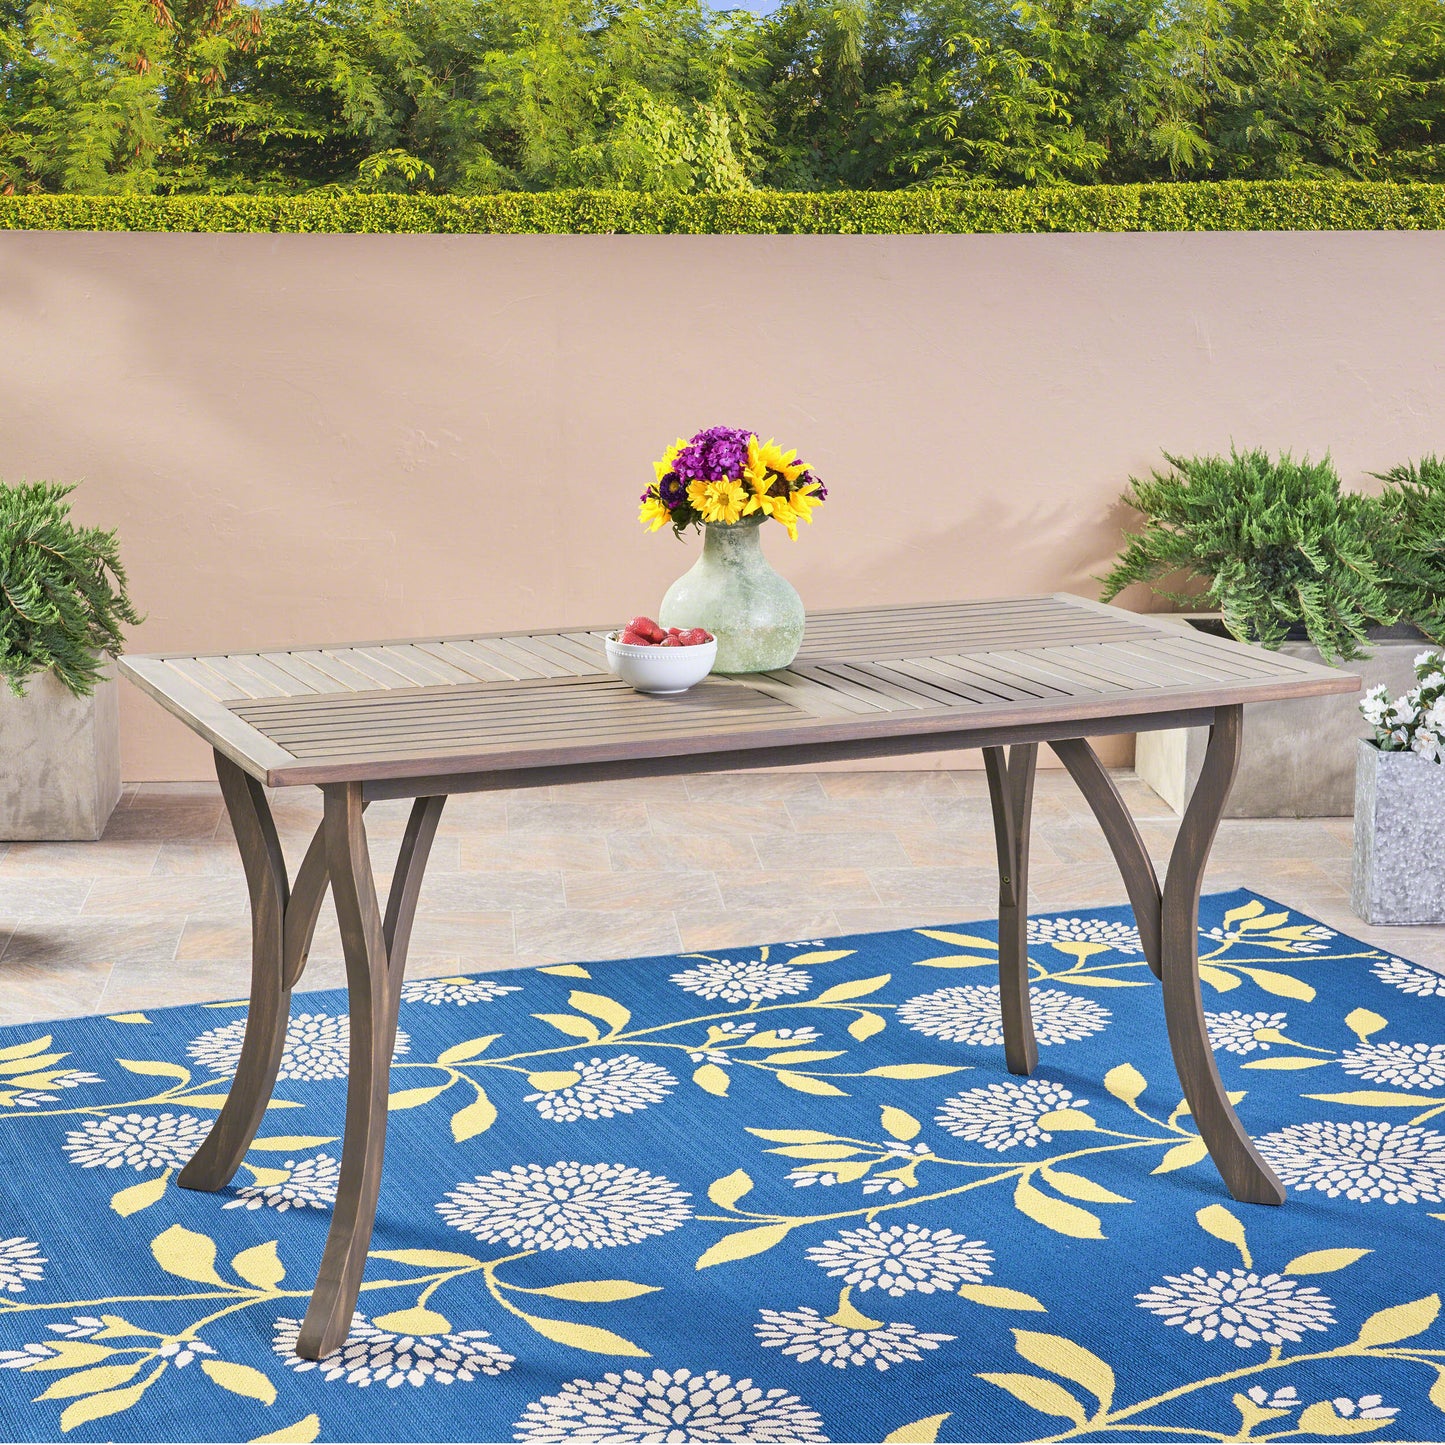 Jaden Outdoor Acacia Wood Rectangular Dining Table, Gray